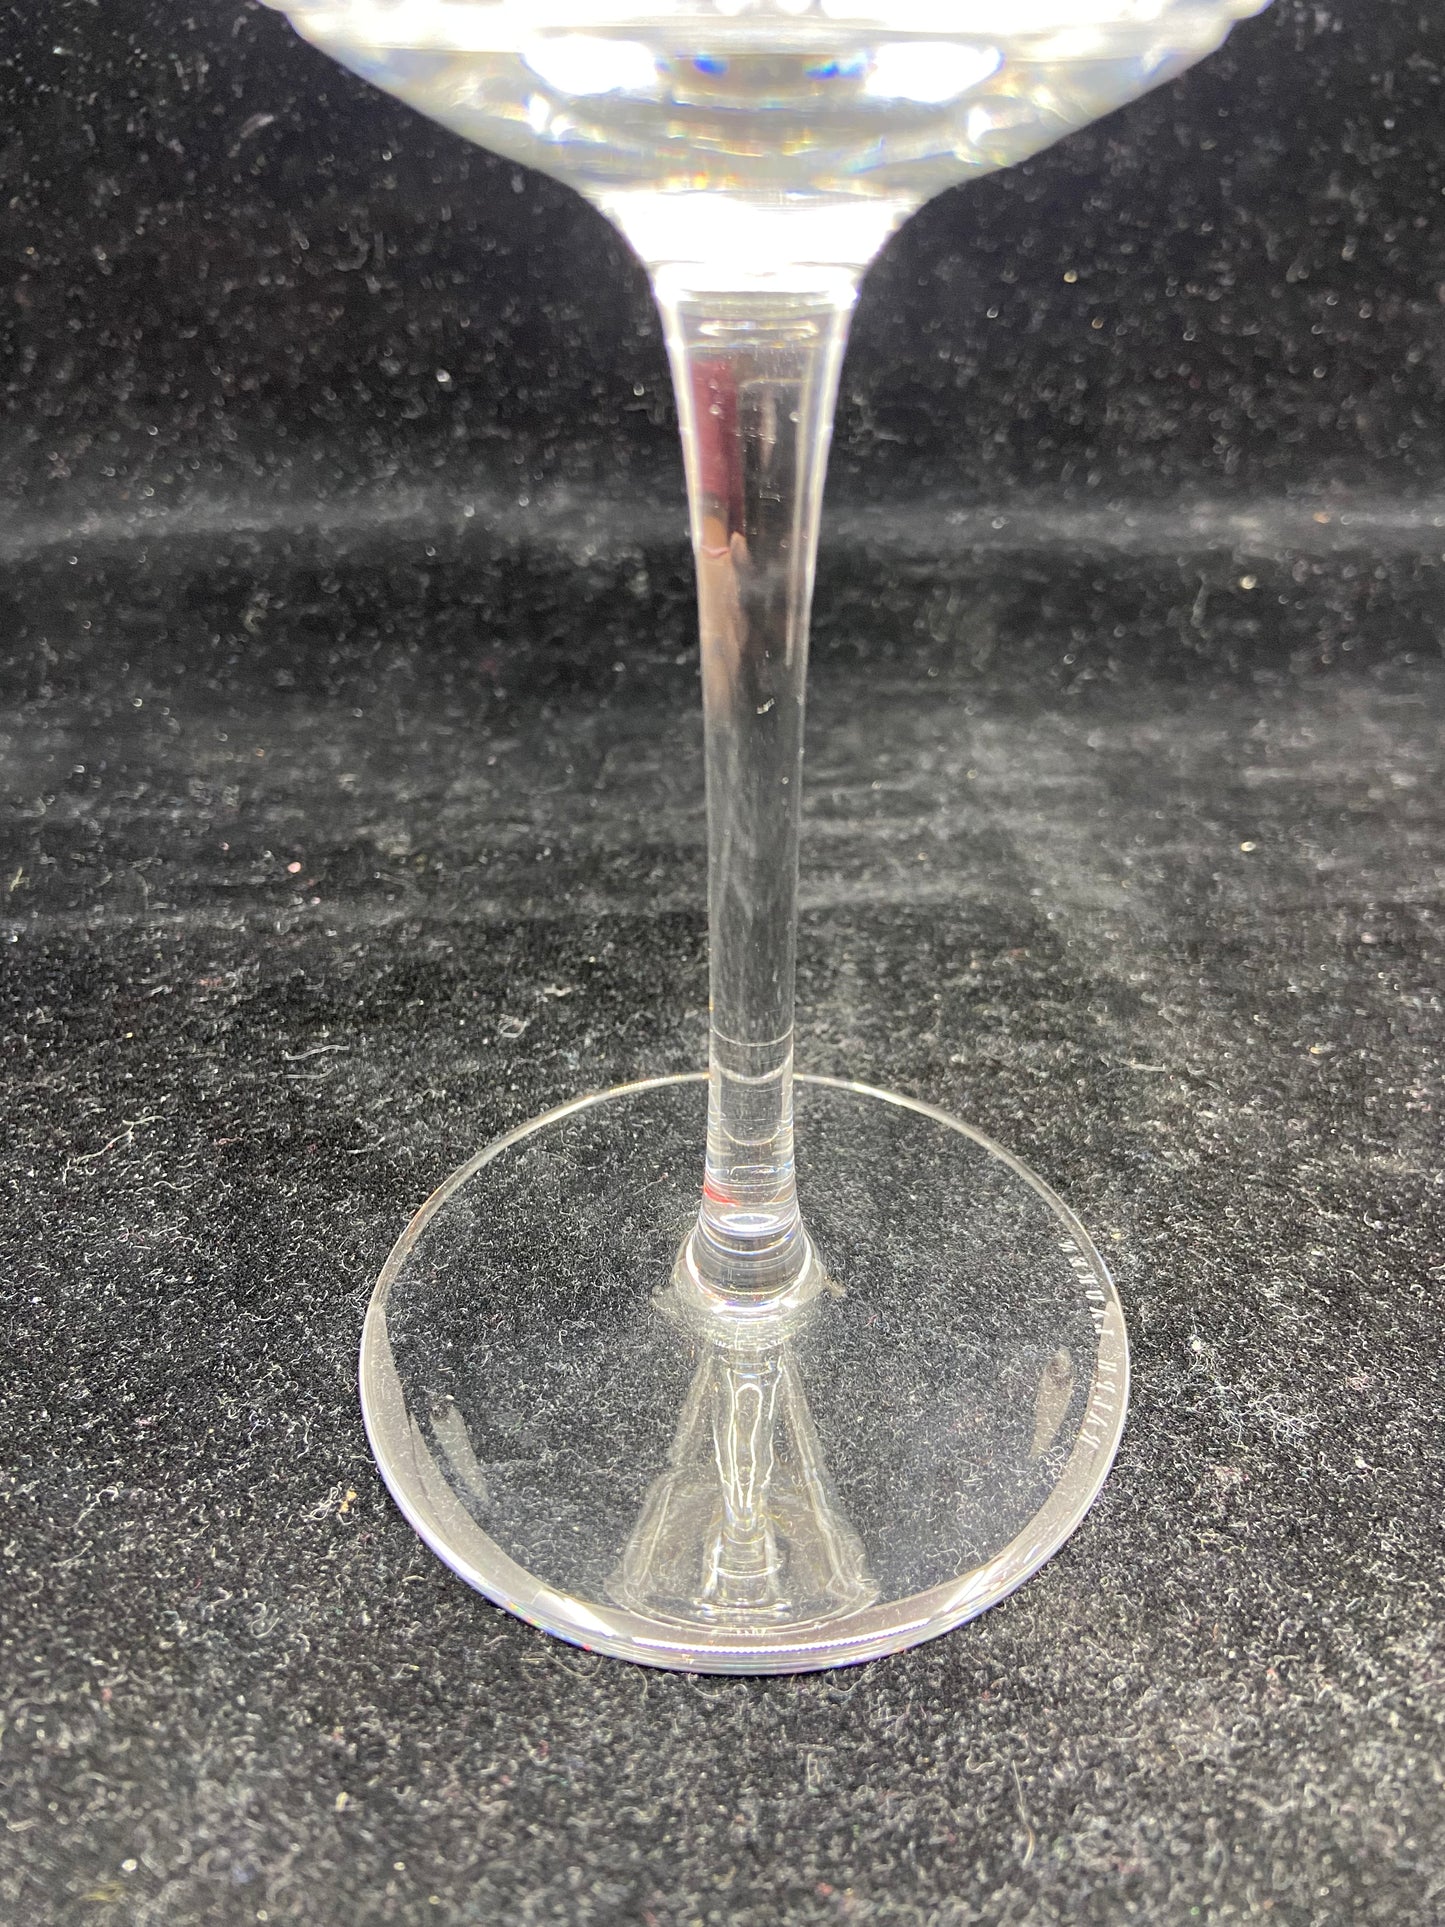 Ralph Lauren Hudson Plaid Water Glass (25131-25137)